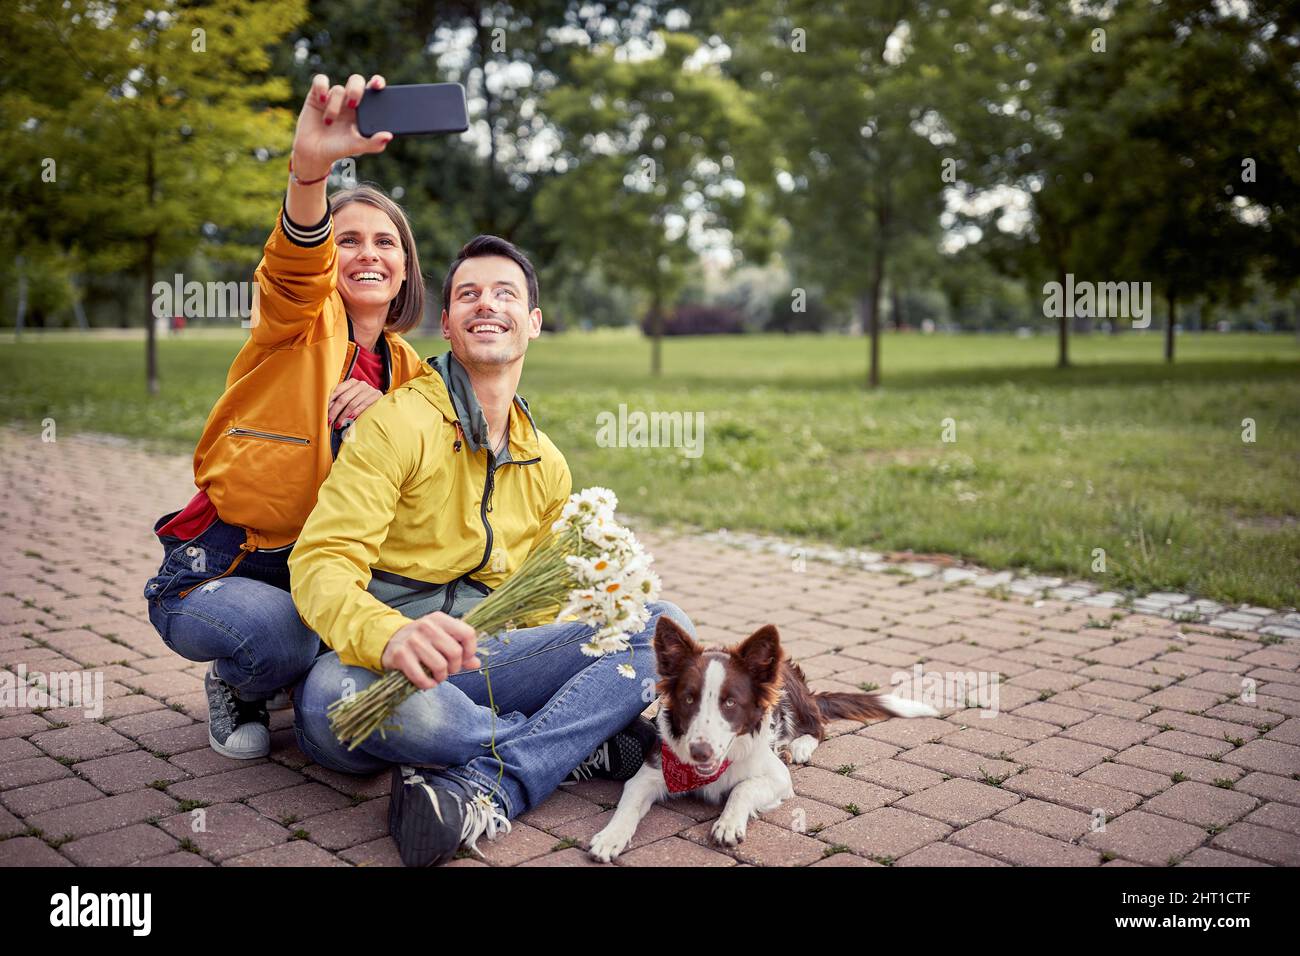 belle jeune femme en tenue décontractée prenant le selfie d'elle-même et un petit ami assis avec les jambes croisées et un chien au milieu d'un chemin dans le parc Banque D'Images